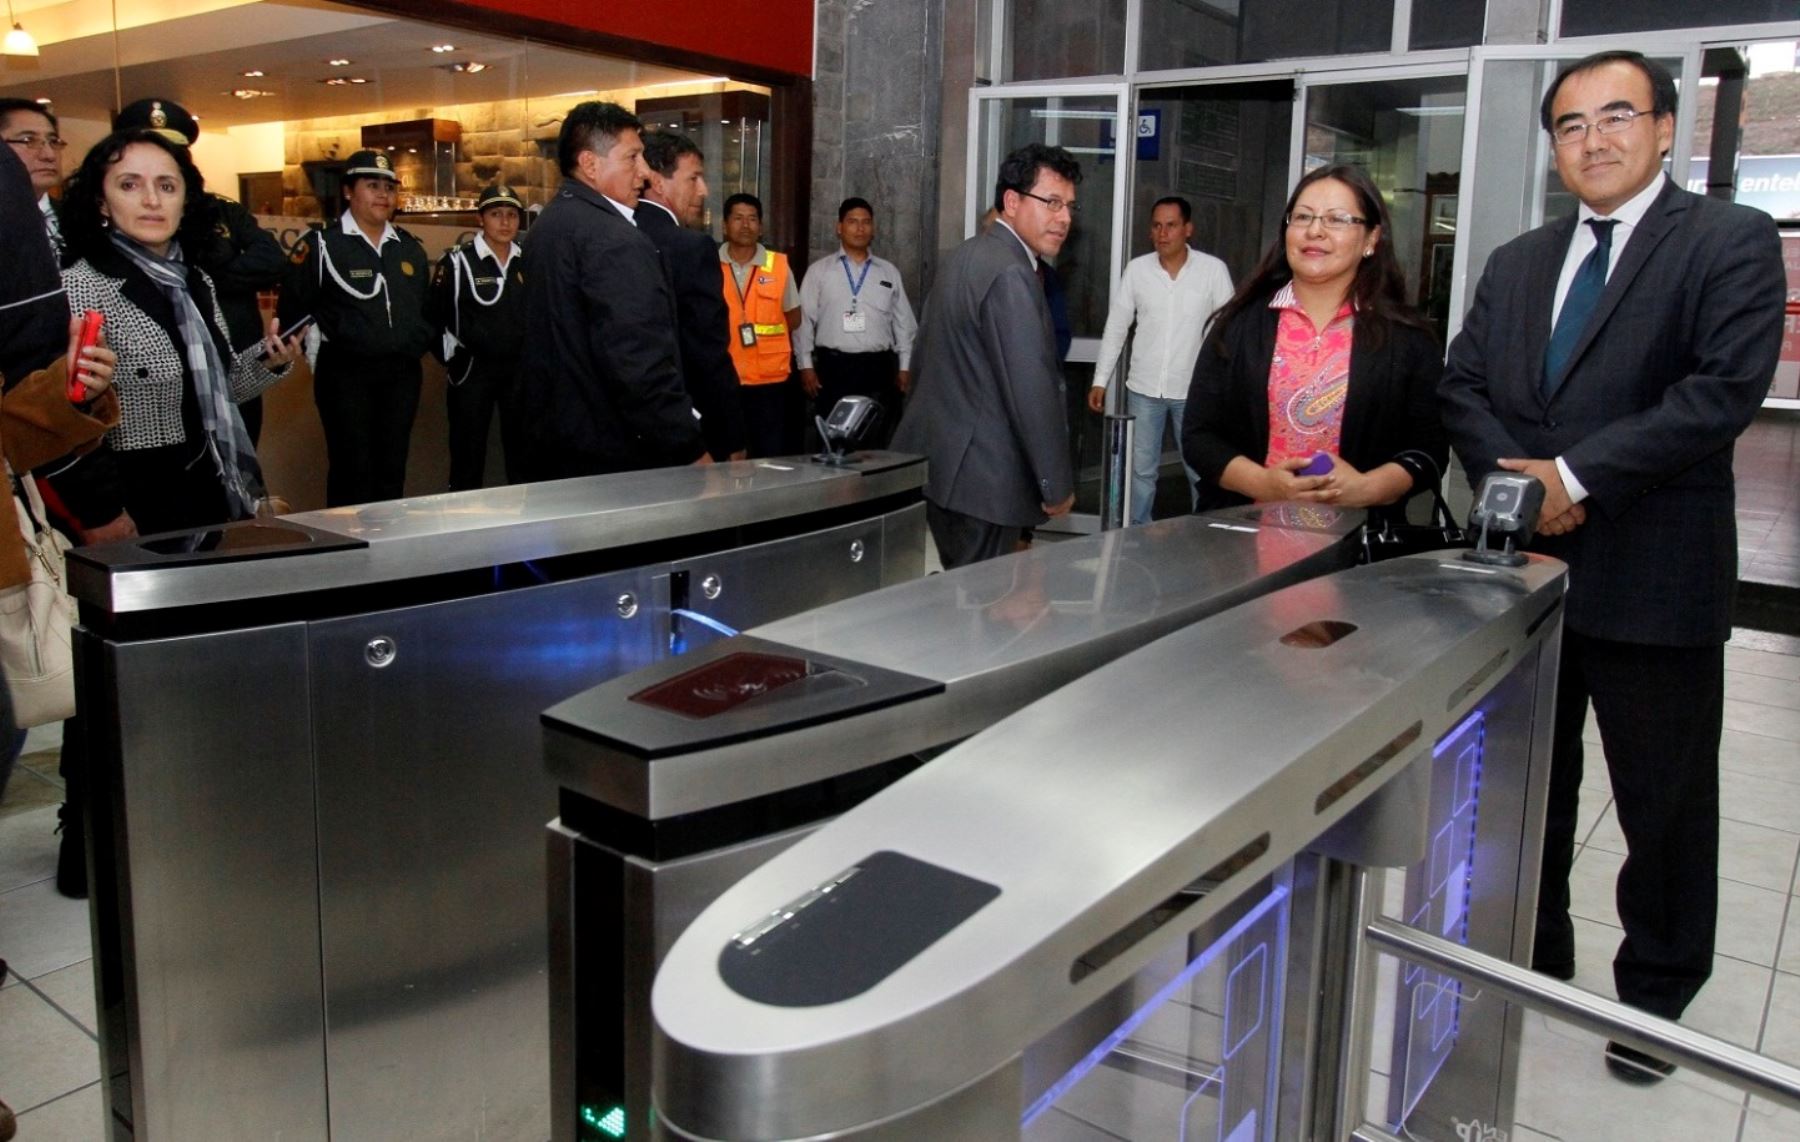 Se inauguraron obras de remodelación y ampliación del aeropuerto Alejandro Velasco Astete de Cusco. ANDINA/Percy Hurtado